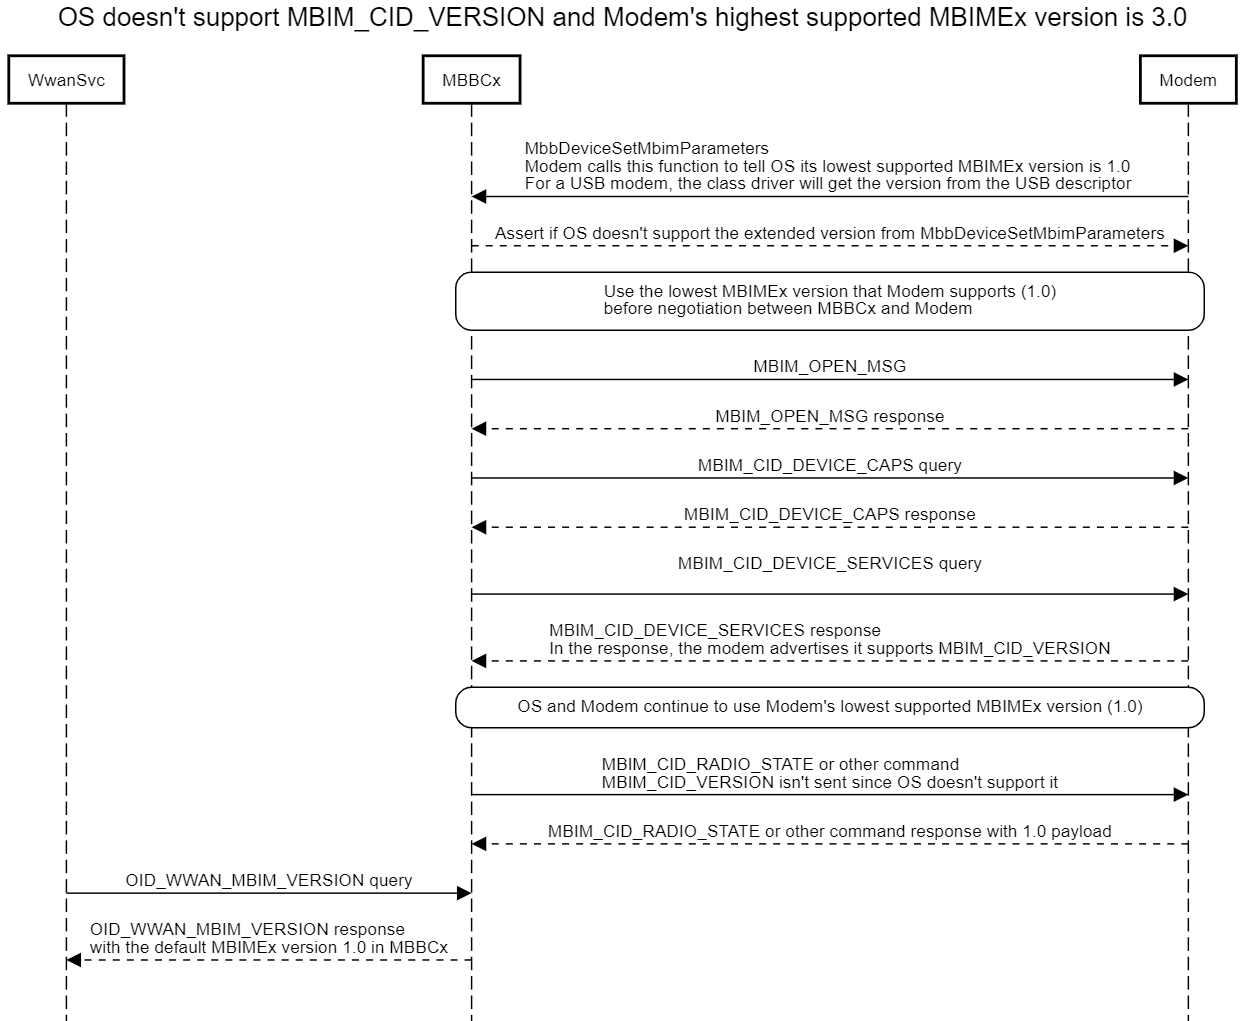 显示没有MBIM_CID_VERSION支持的 OS 和调制解调器支持的最高 MBIMEx 版本为 3.0 的示意图。